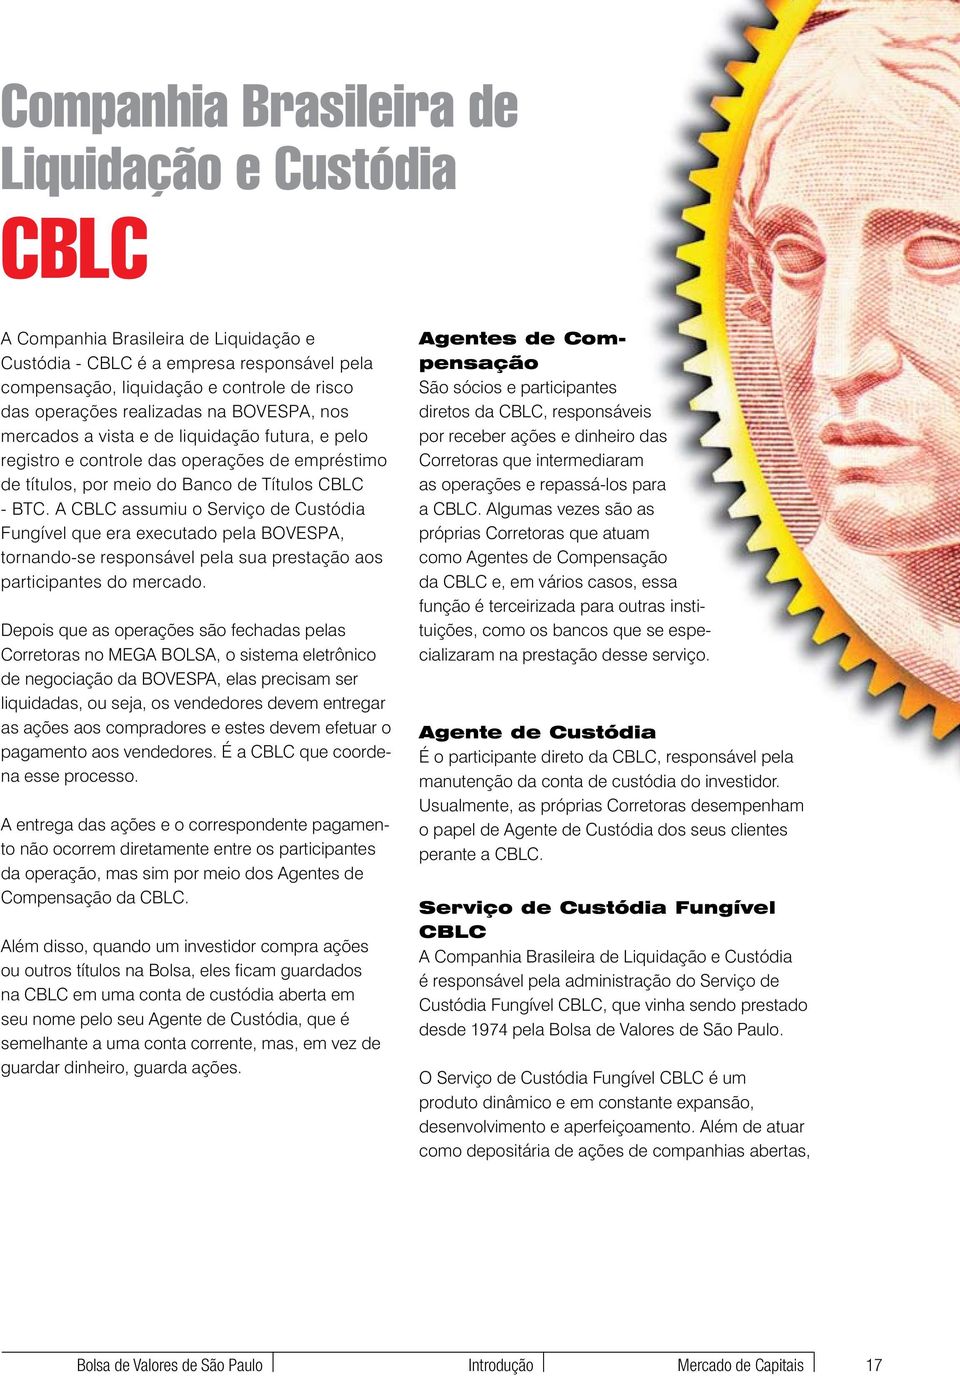 A CBLC assumiu o Serviço de Custódia Fungível que era executado pela BOVESPA, tornando-se responsável pela sua prestação aos participantes do mercado.